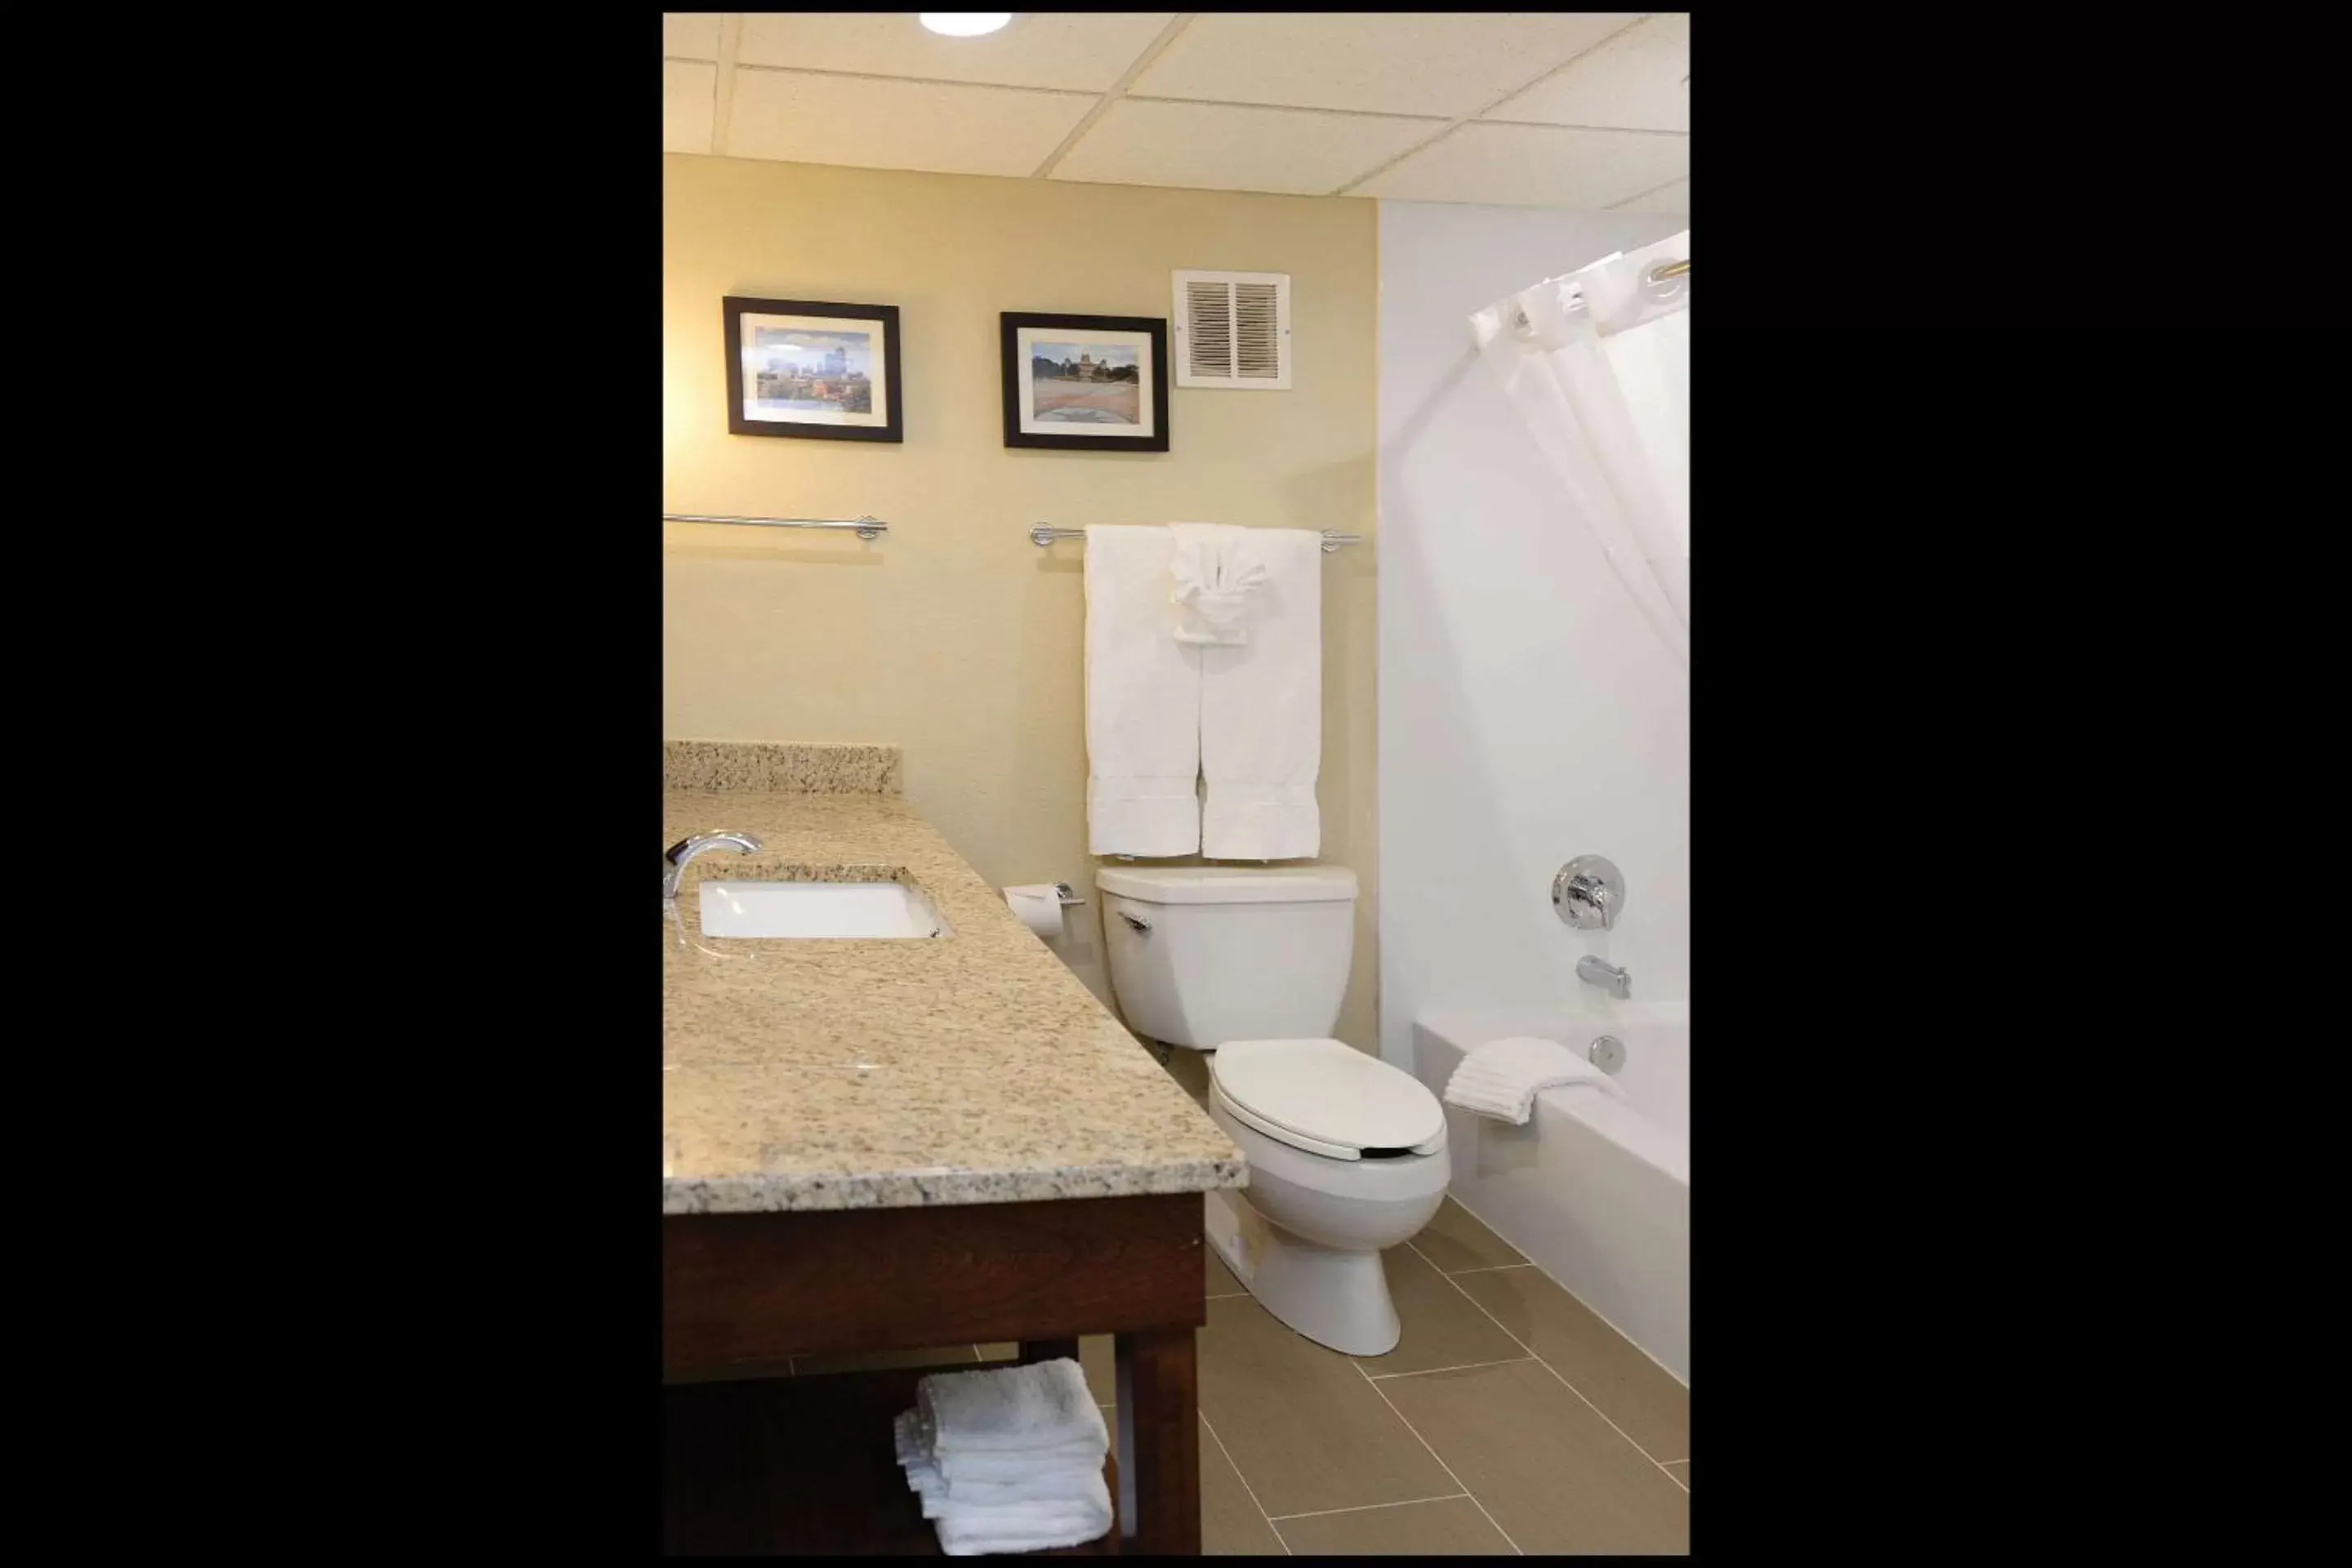 Bathroom in Comfort Inn & Suites Event Center